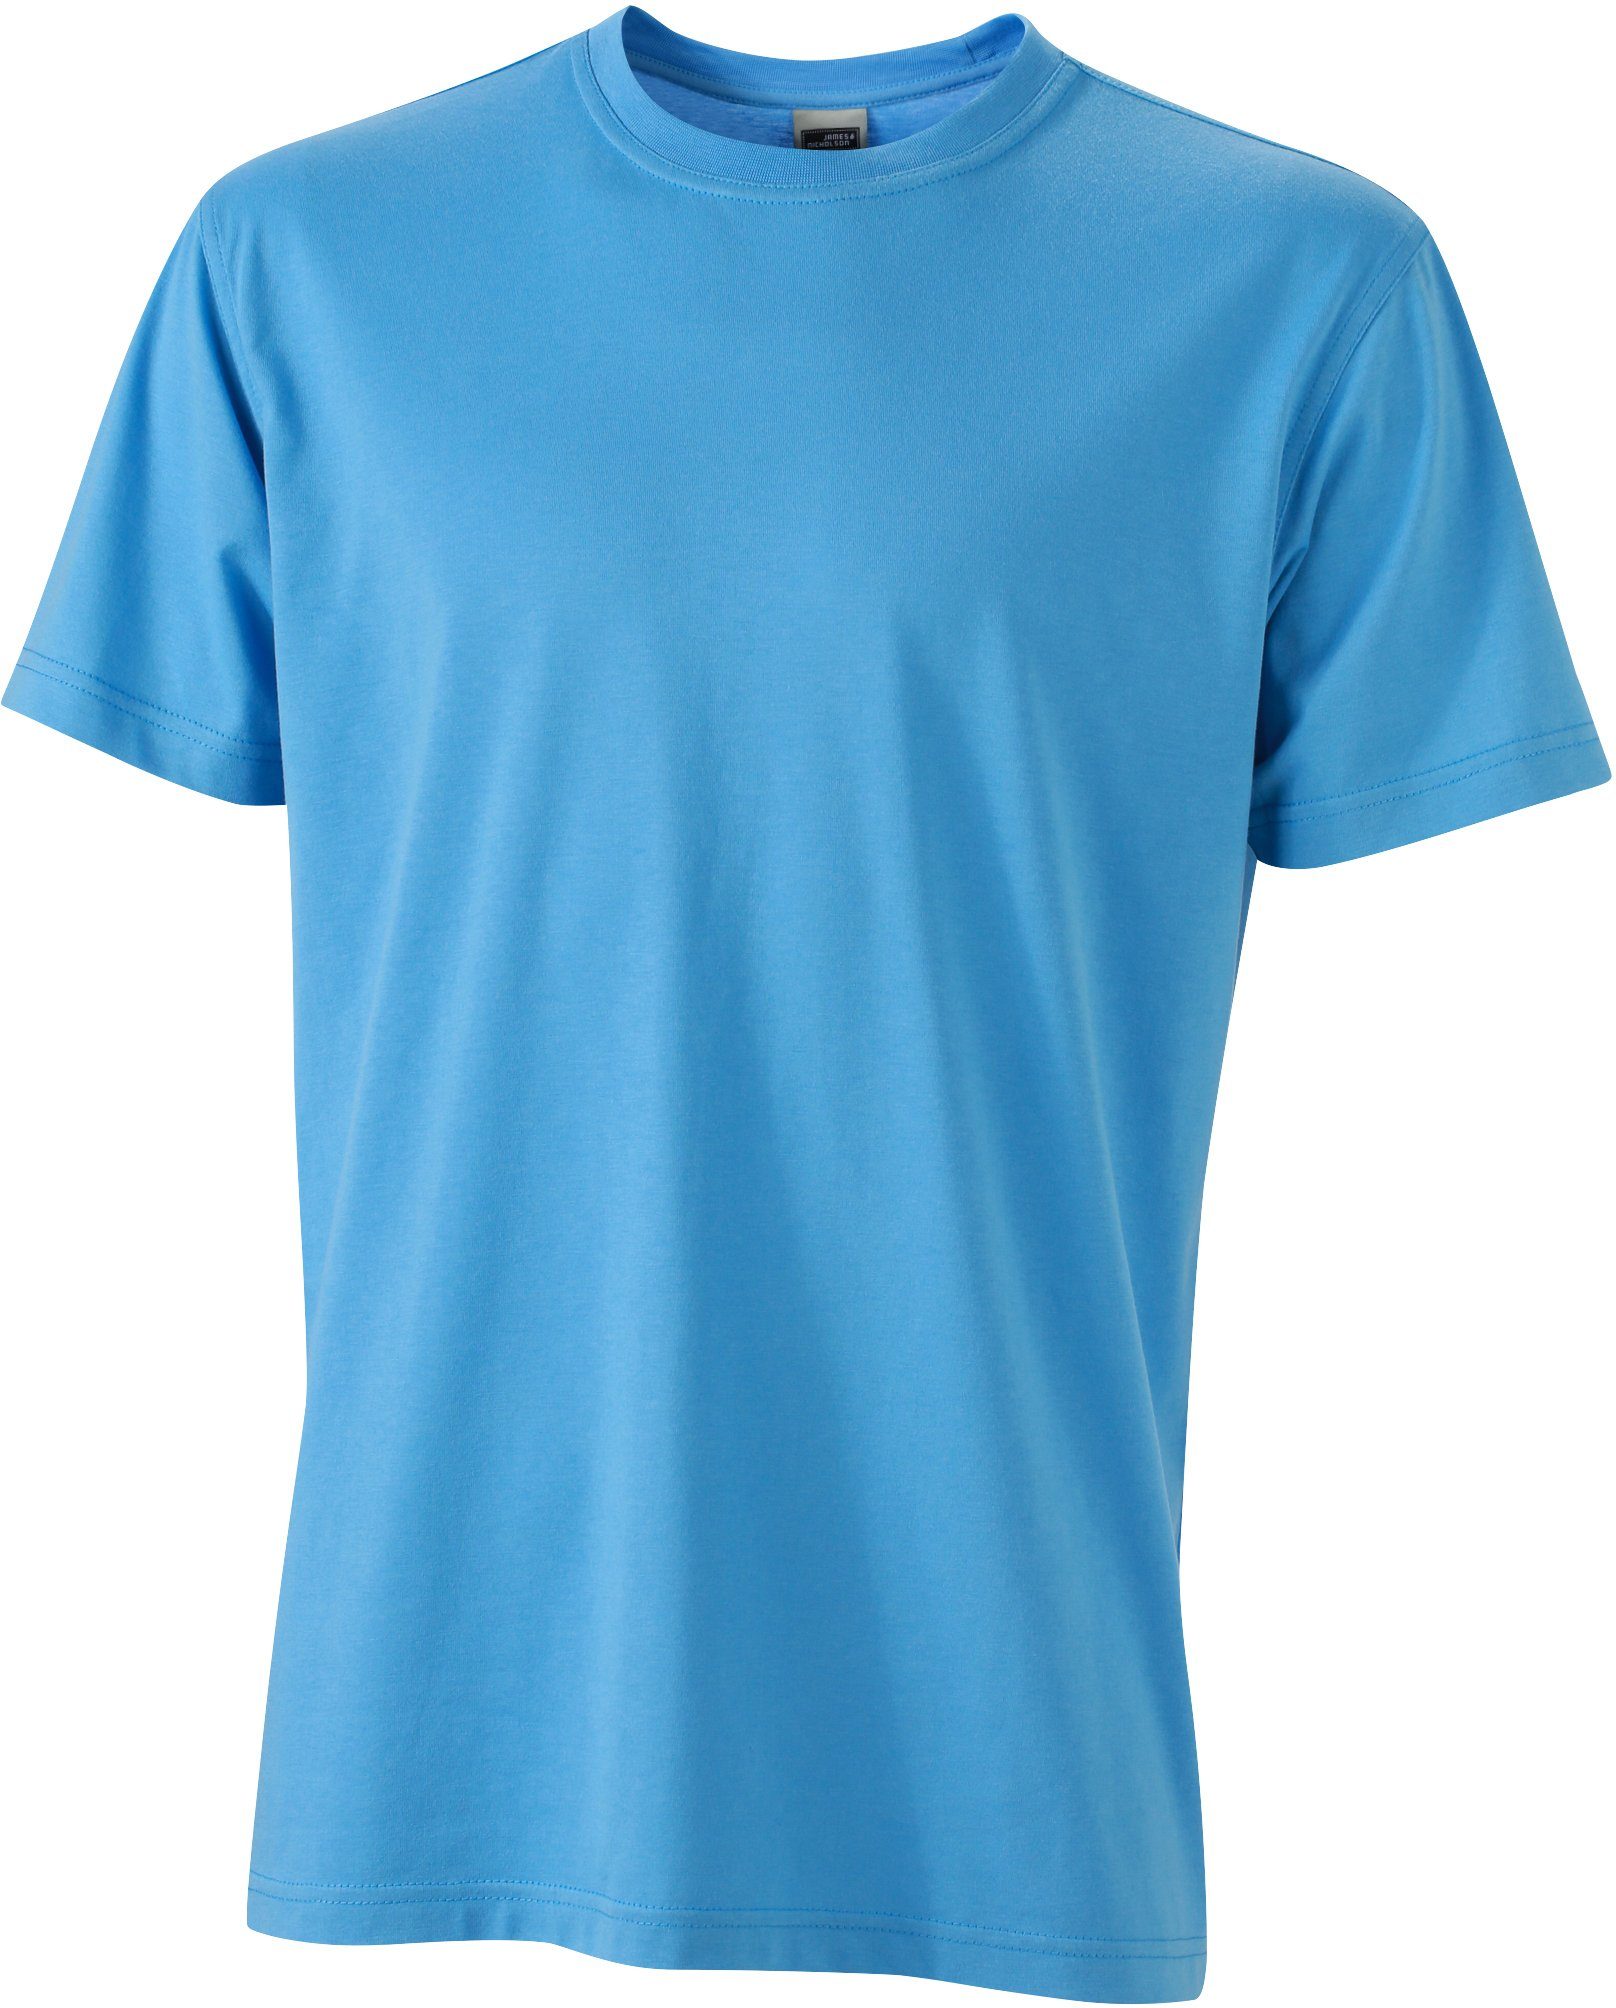 James & Nicholson T-Shirt Workwear T-Shirt FaS50838 auch in großen Größen AQUA